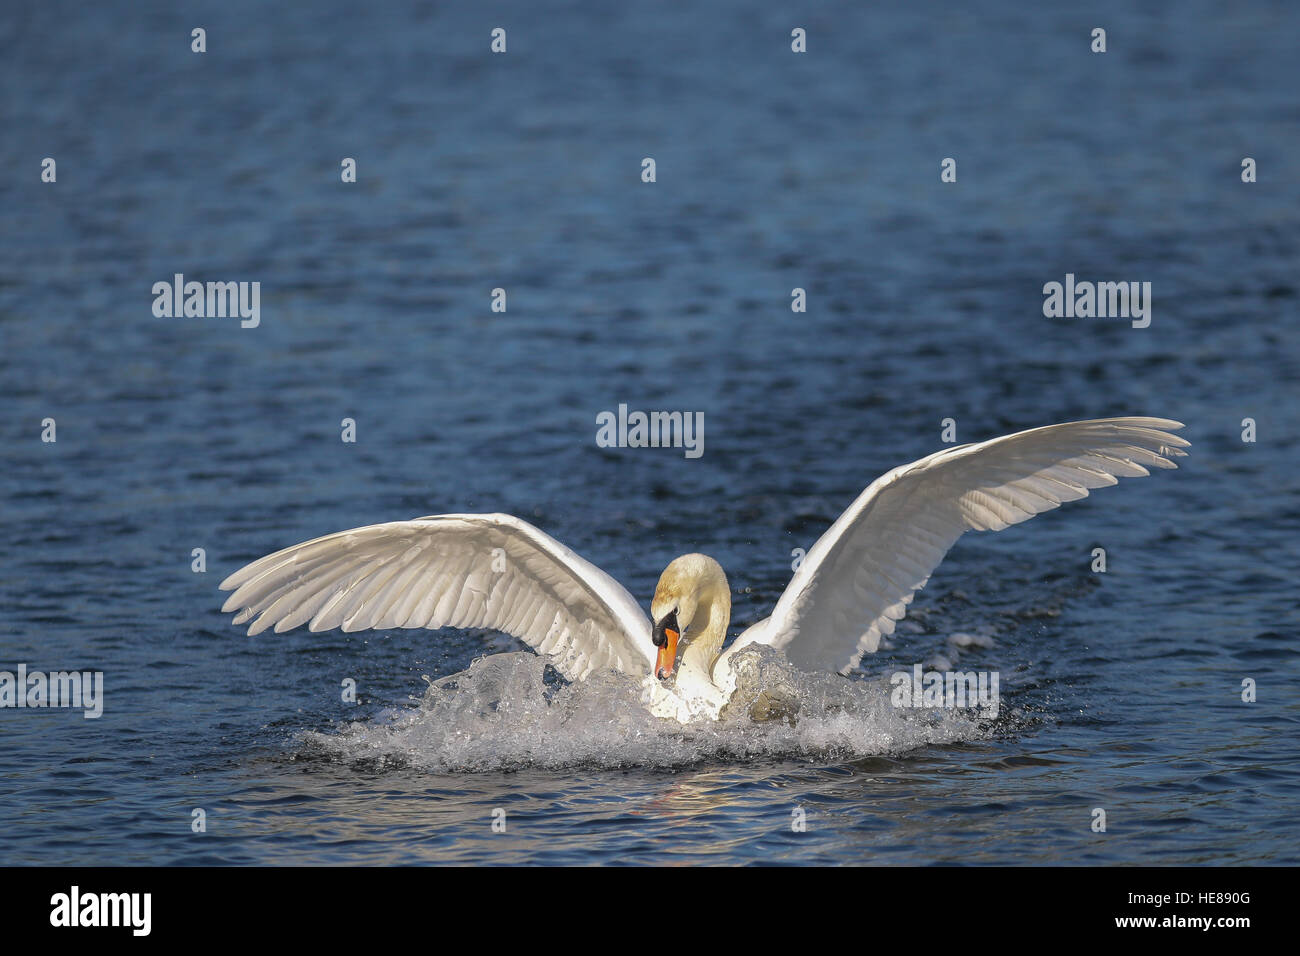 Mute swan (Cygnus olor) lands in water, Lake Kemnade, North Rhine-Westphalia, Germany Stock Photo